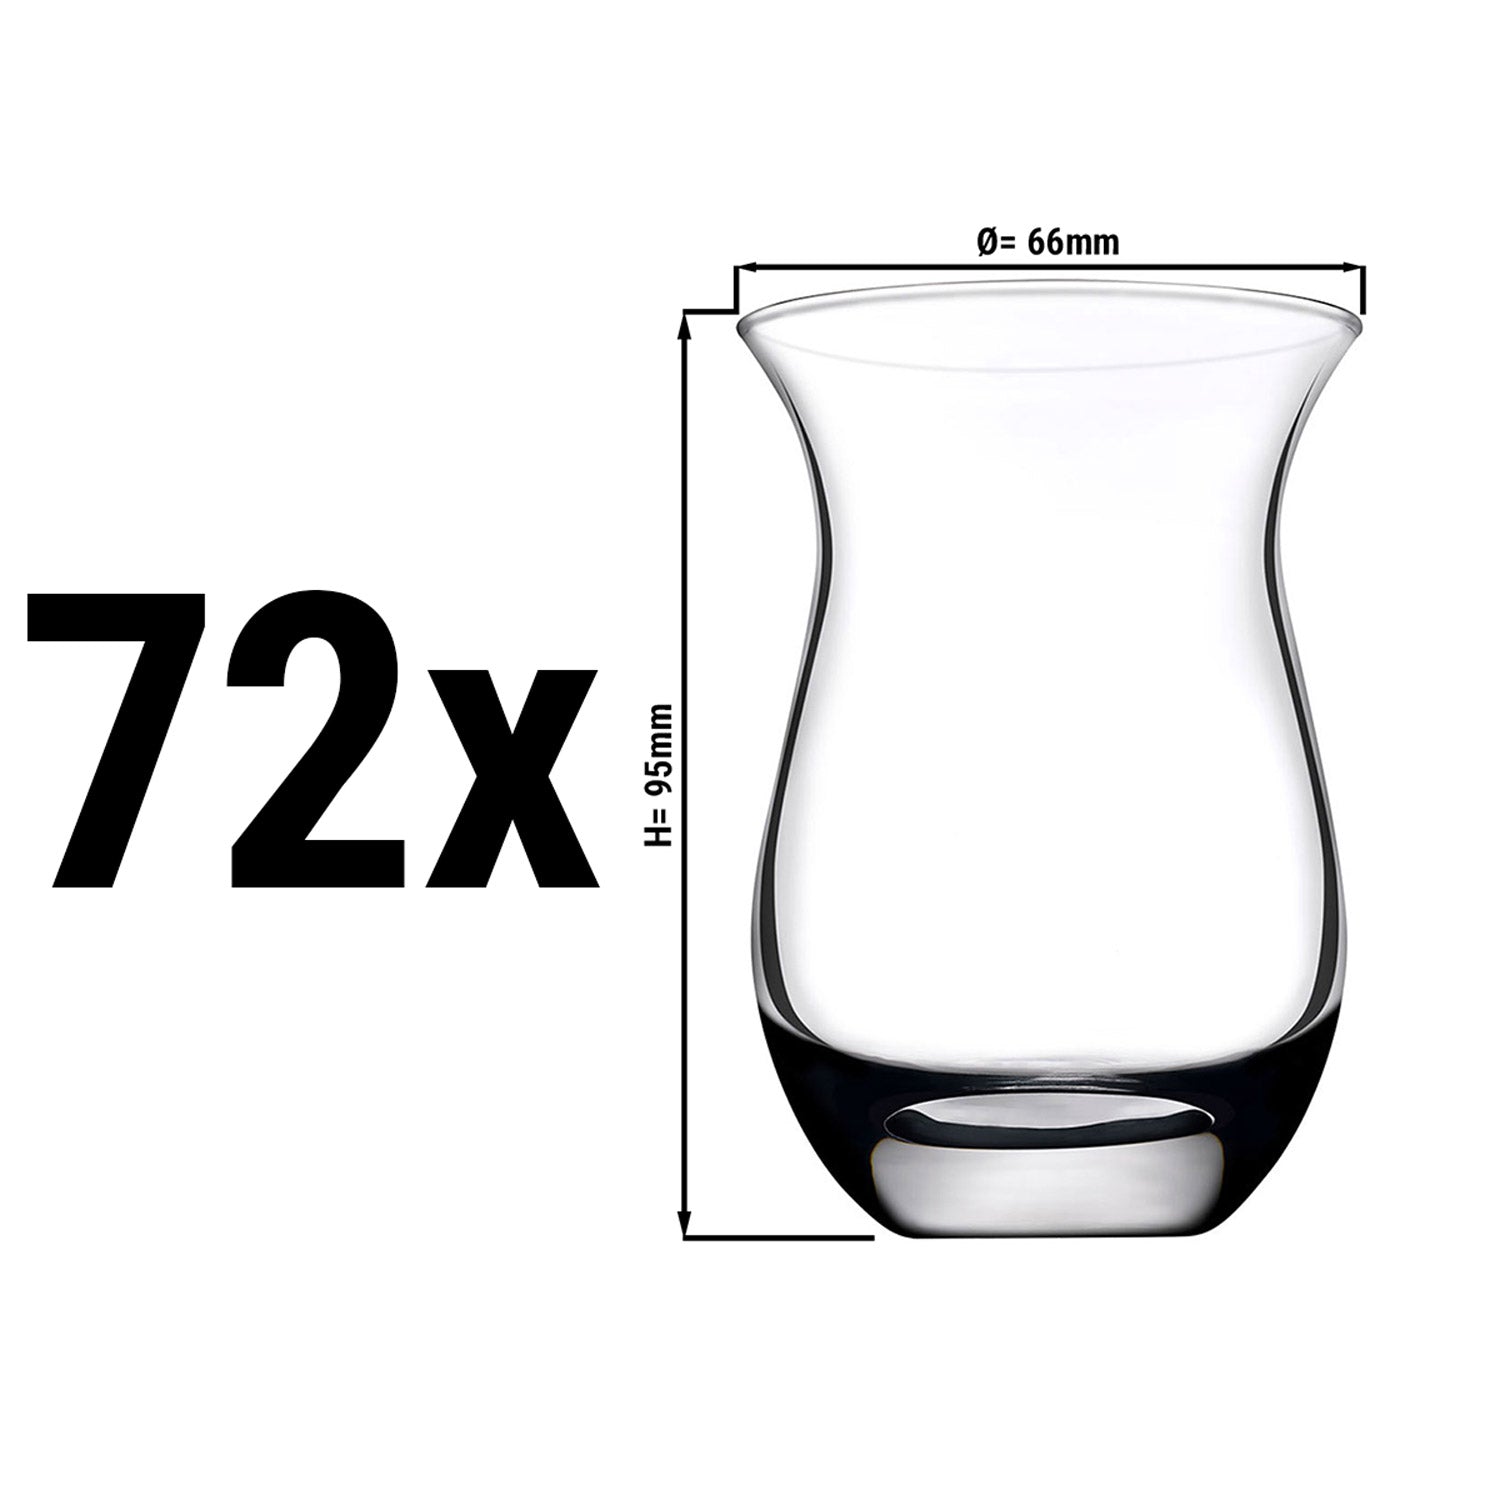 IZMIR teglas - 0,16 liter - sæt med 6 stk.